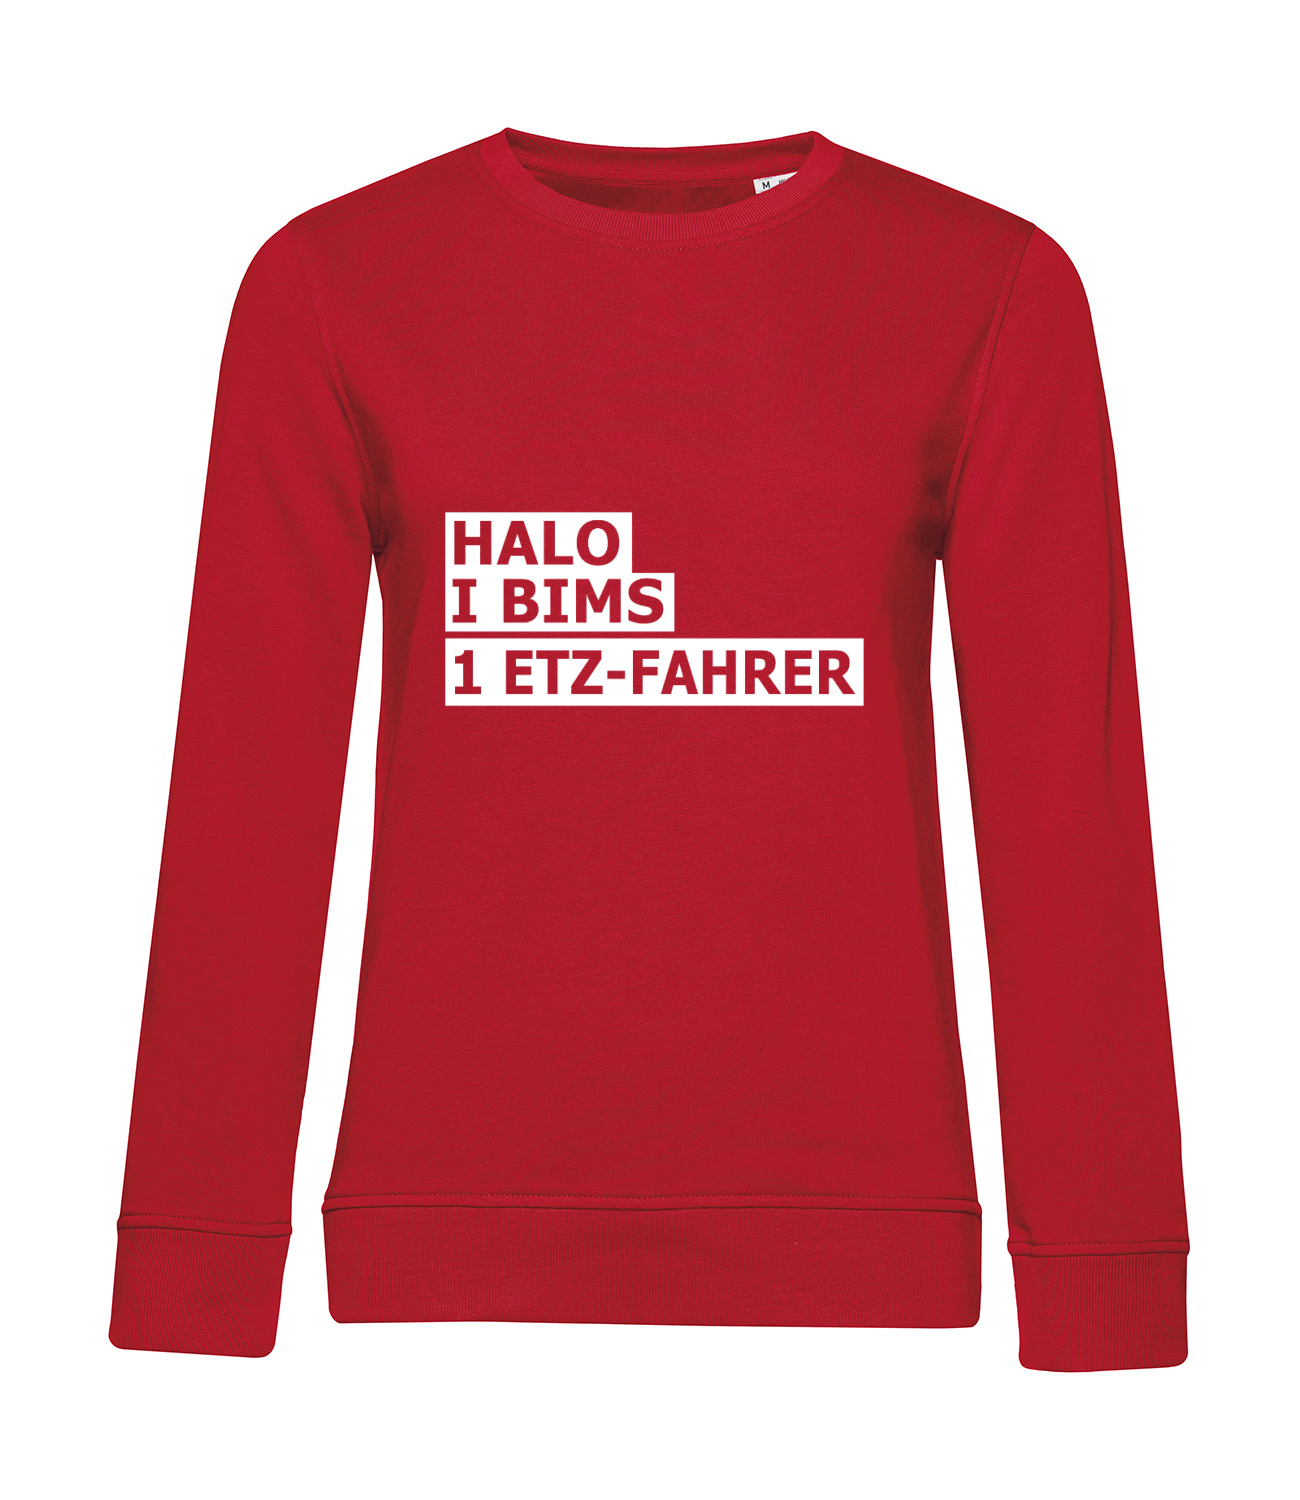 Nachhaltiges Sweatshirt Damen 2Takter - Halo I bims 1 ETZ-Fahrer